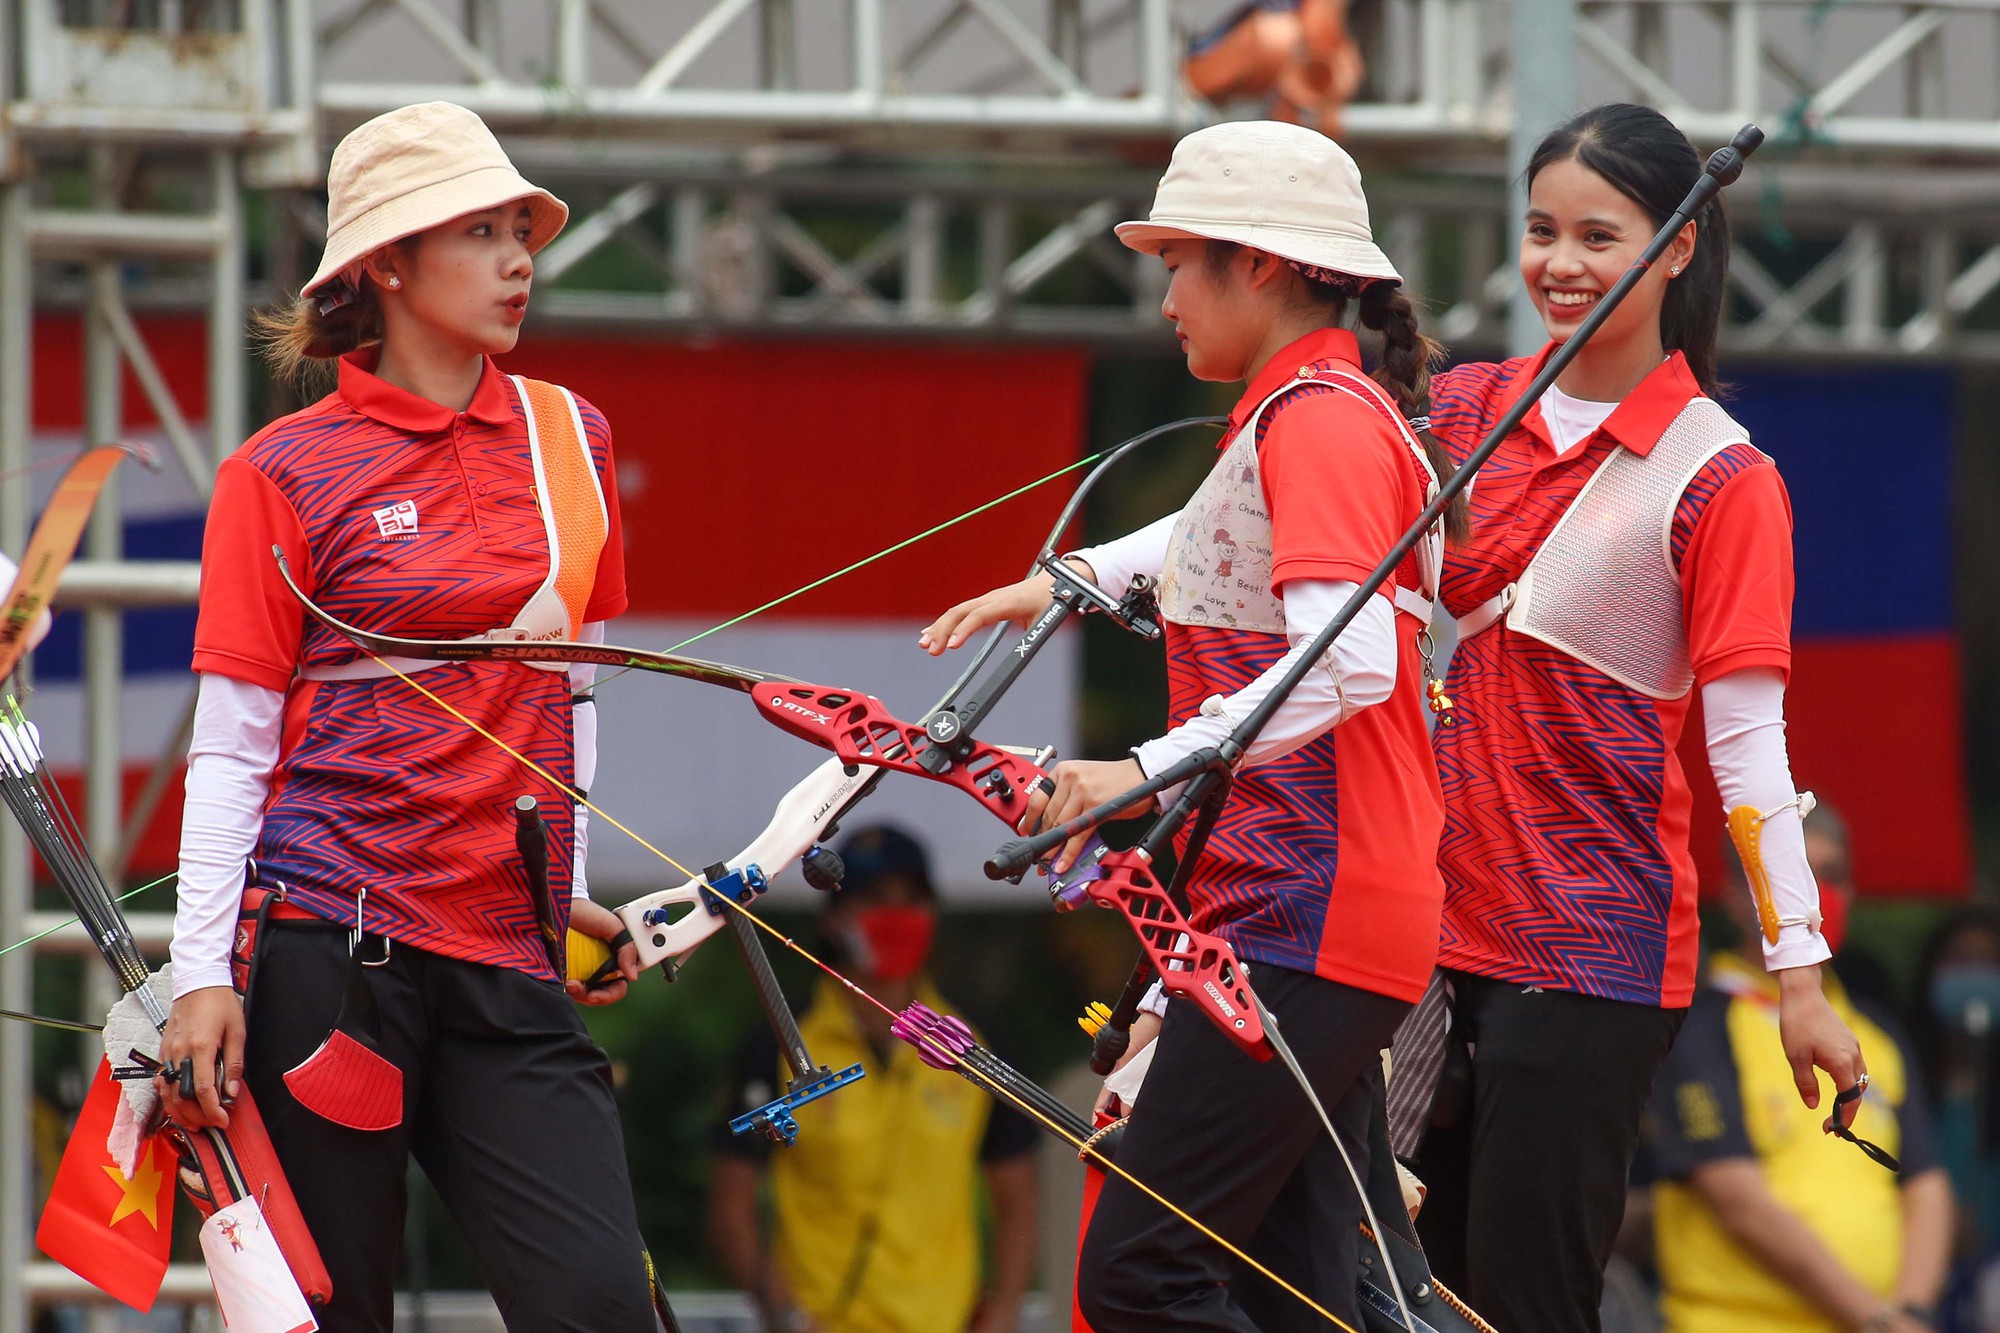 Người đẹp môn bắn cung Ánh Nguyệt cùng đồng đội mất huy chương vàng trước tuyển Philippines - Ảnh 4.